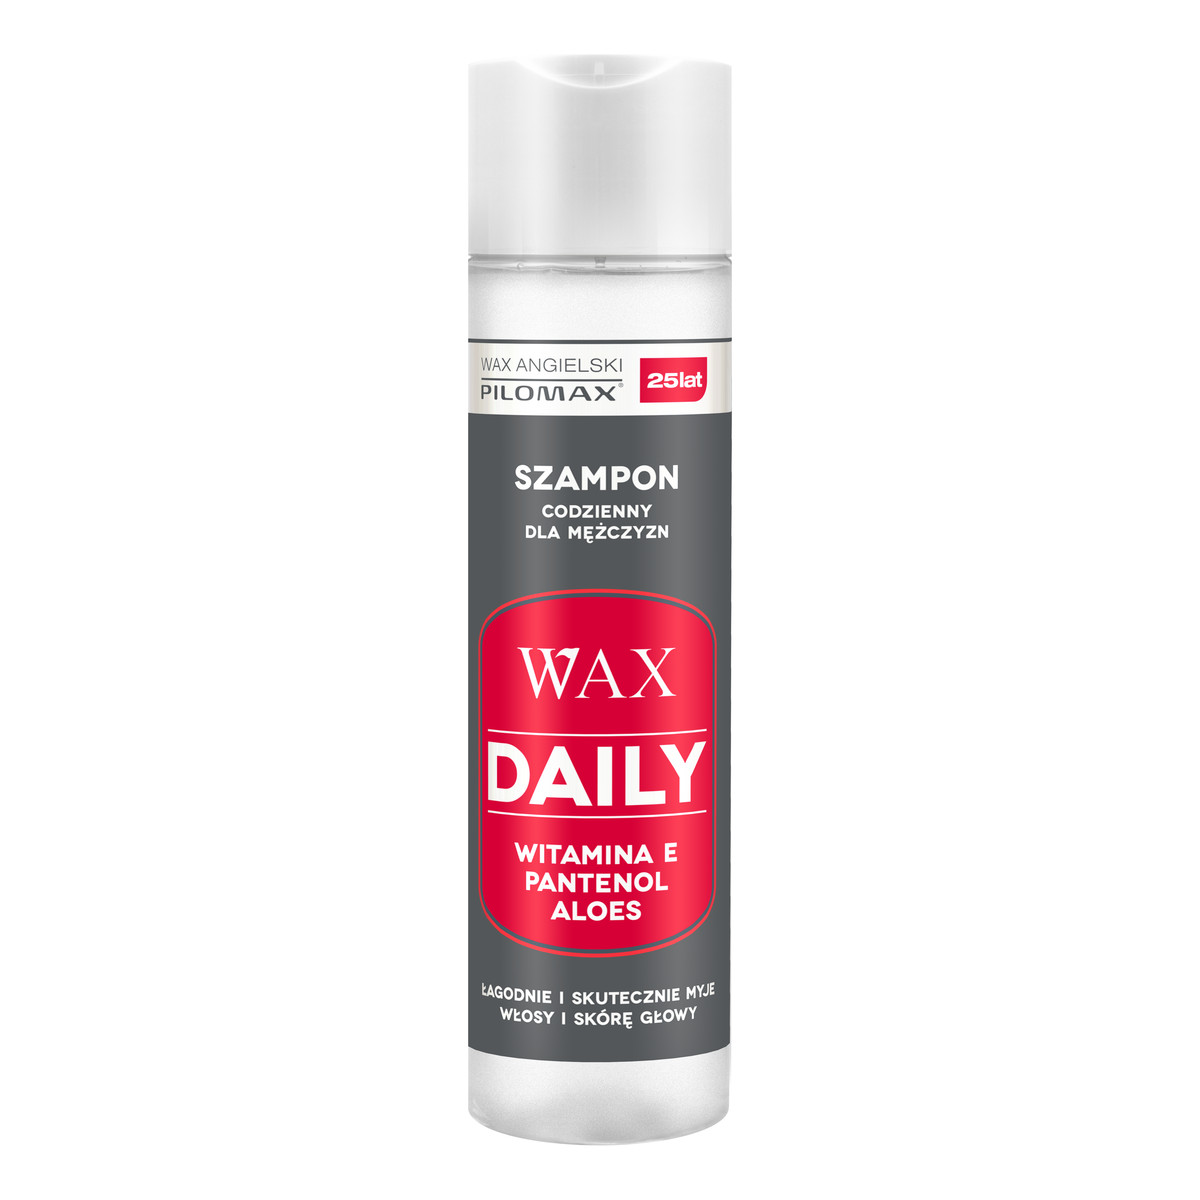 Pilomax Wax Daily Szampon Codzienny Dla Mężczyzn 250ml